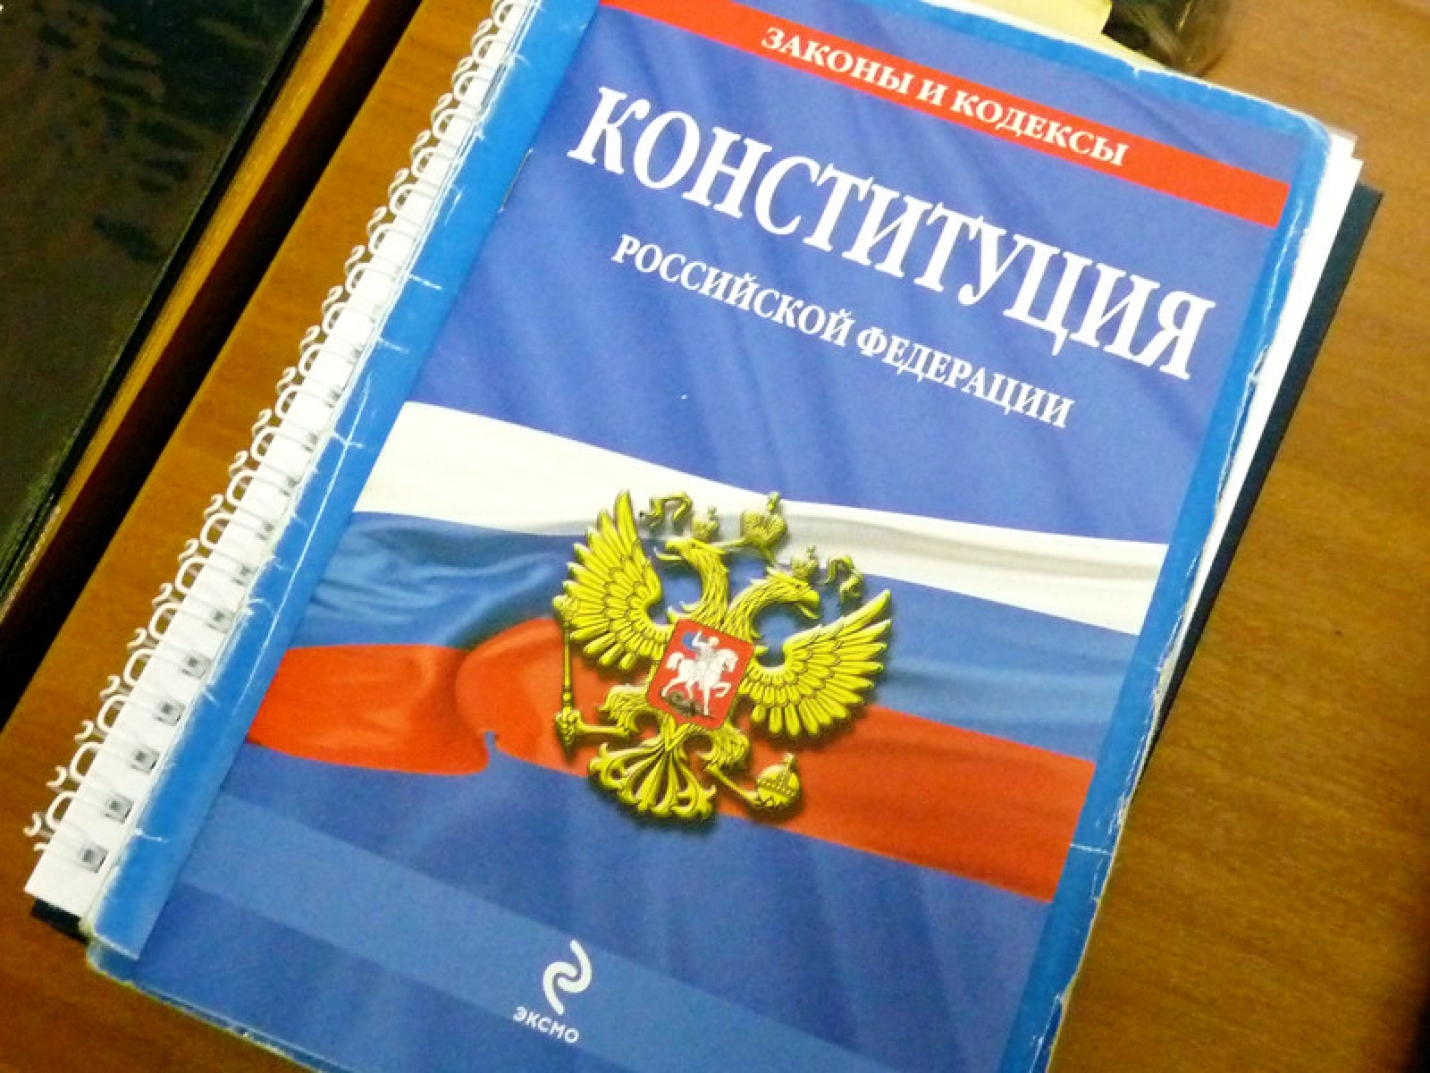 Все подготовленные в Конституцию РФ поправки имеют важное значение